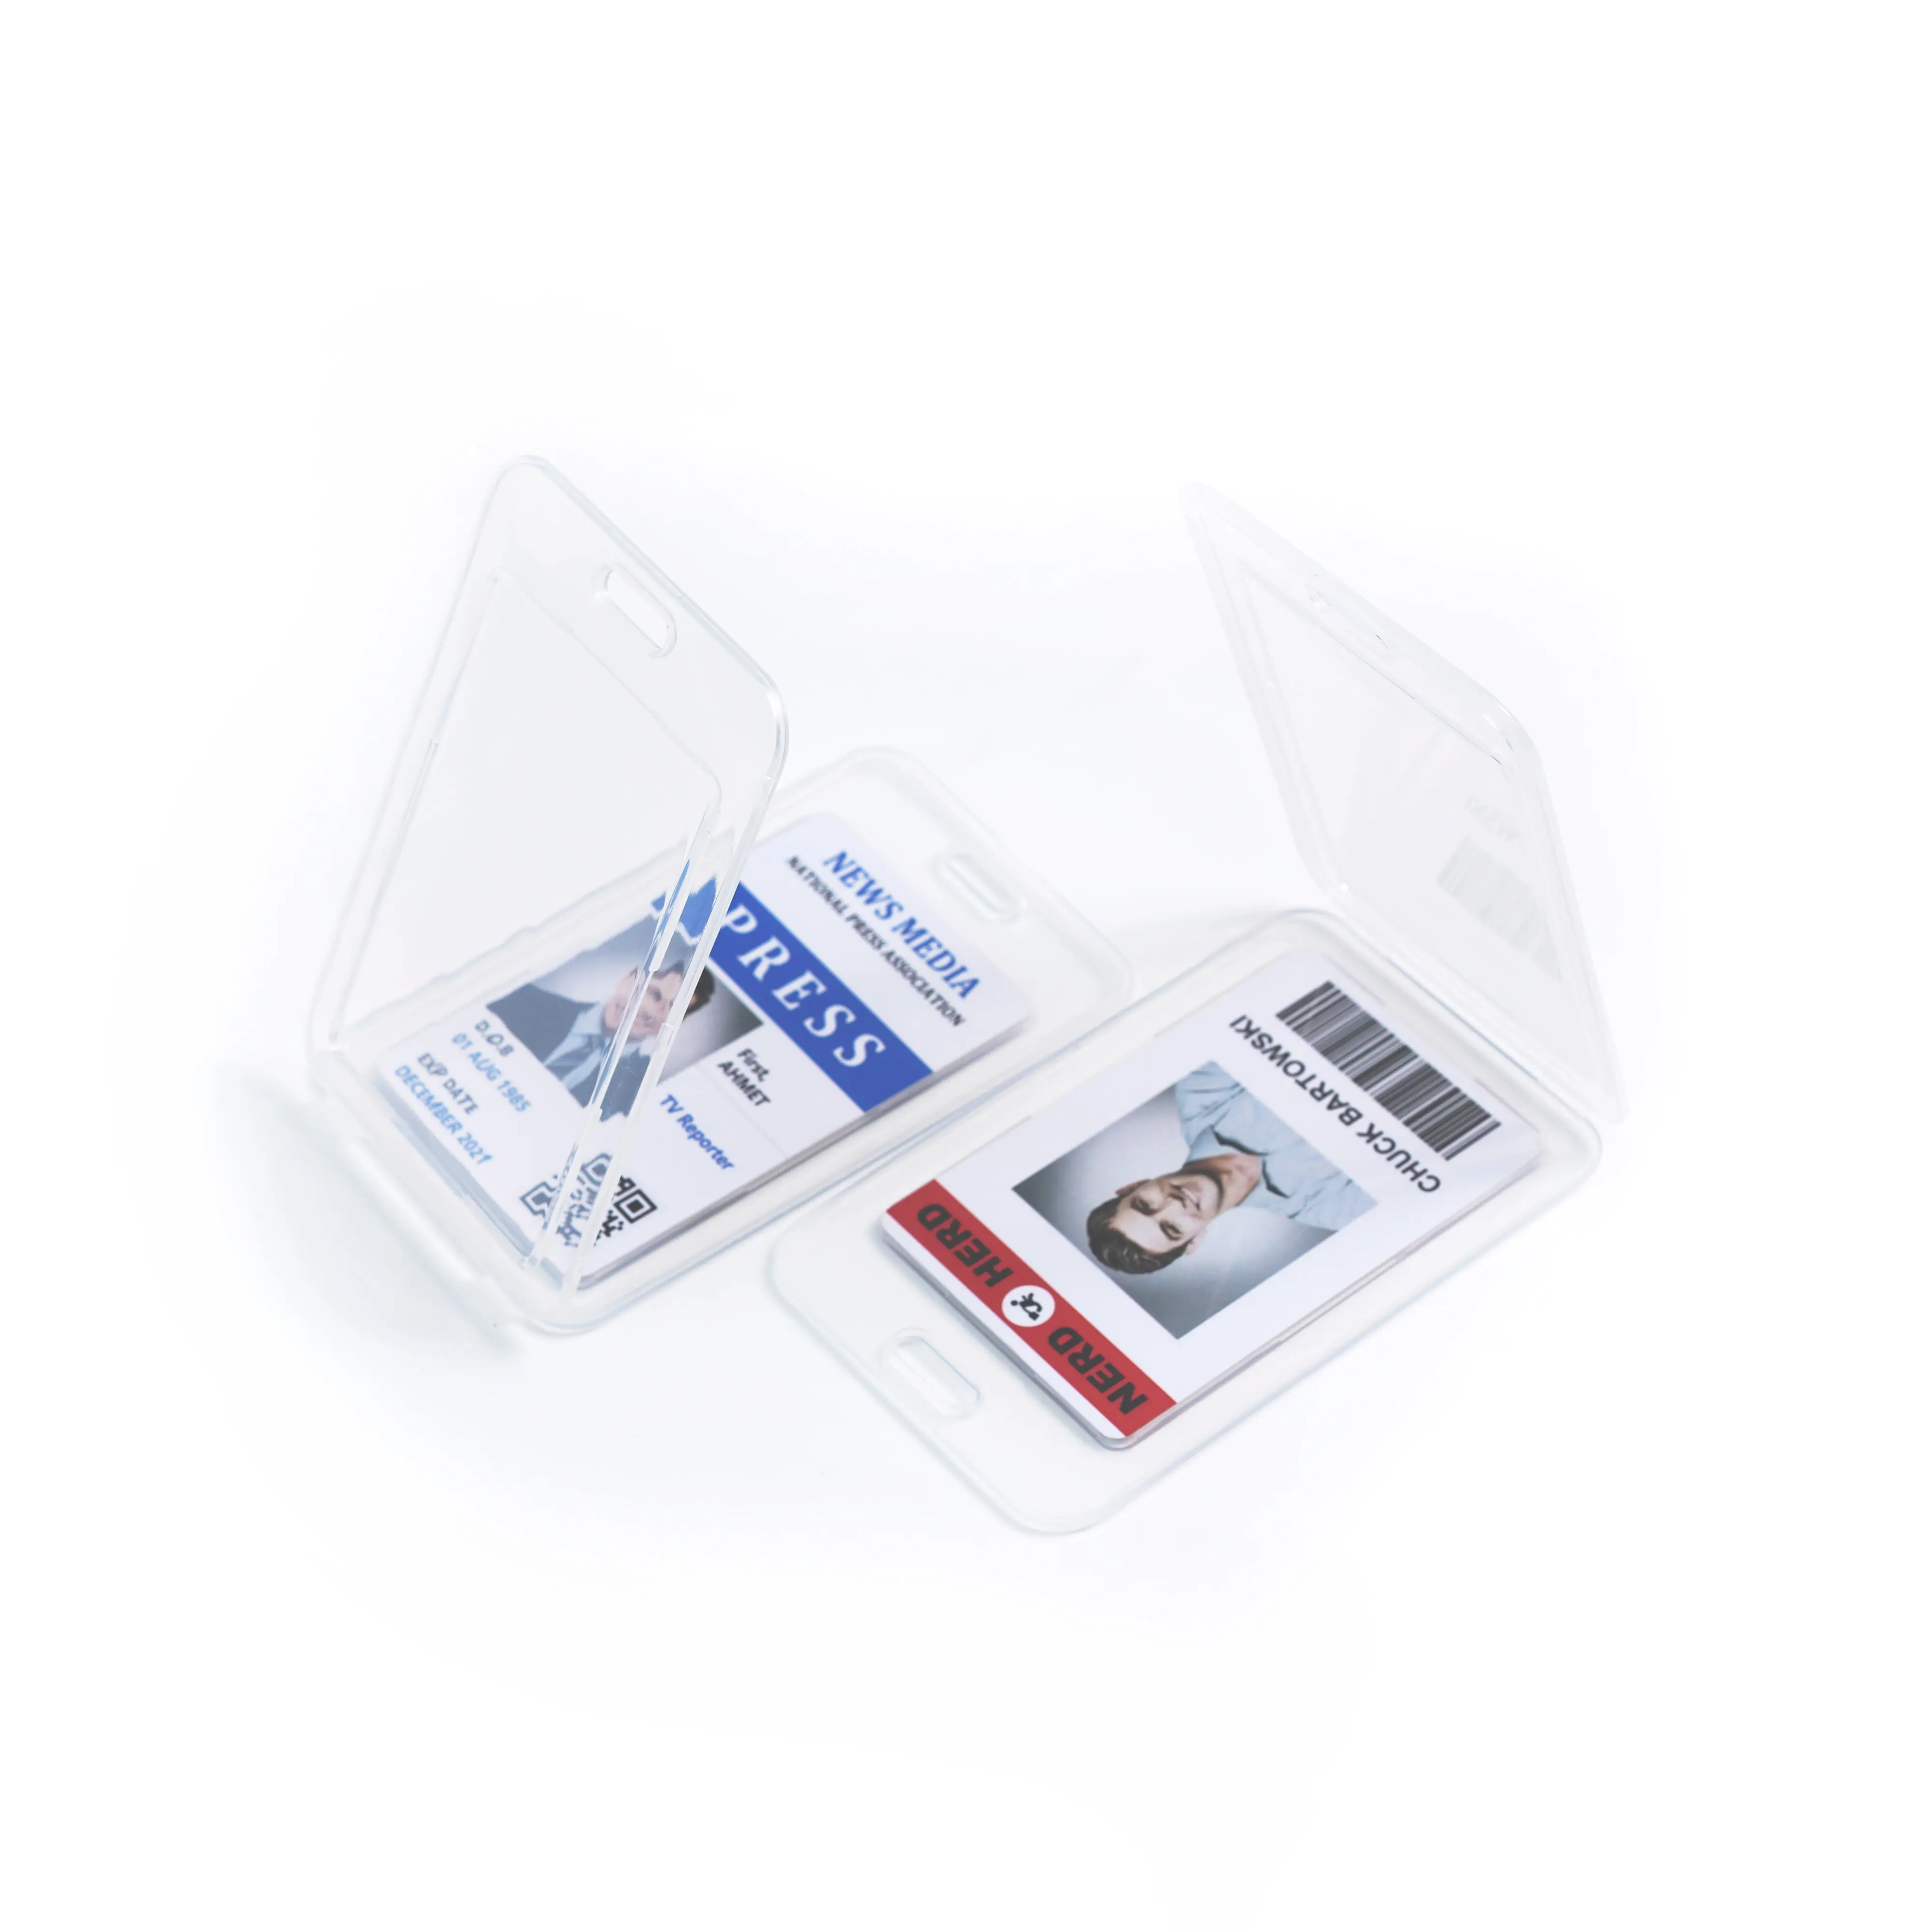 Bestom in plastica trasparente porta carte a fogli mobili PP materiale impermeabile porta carte nome con cordino identificativo titolare della carta